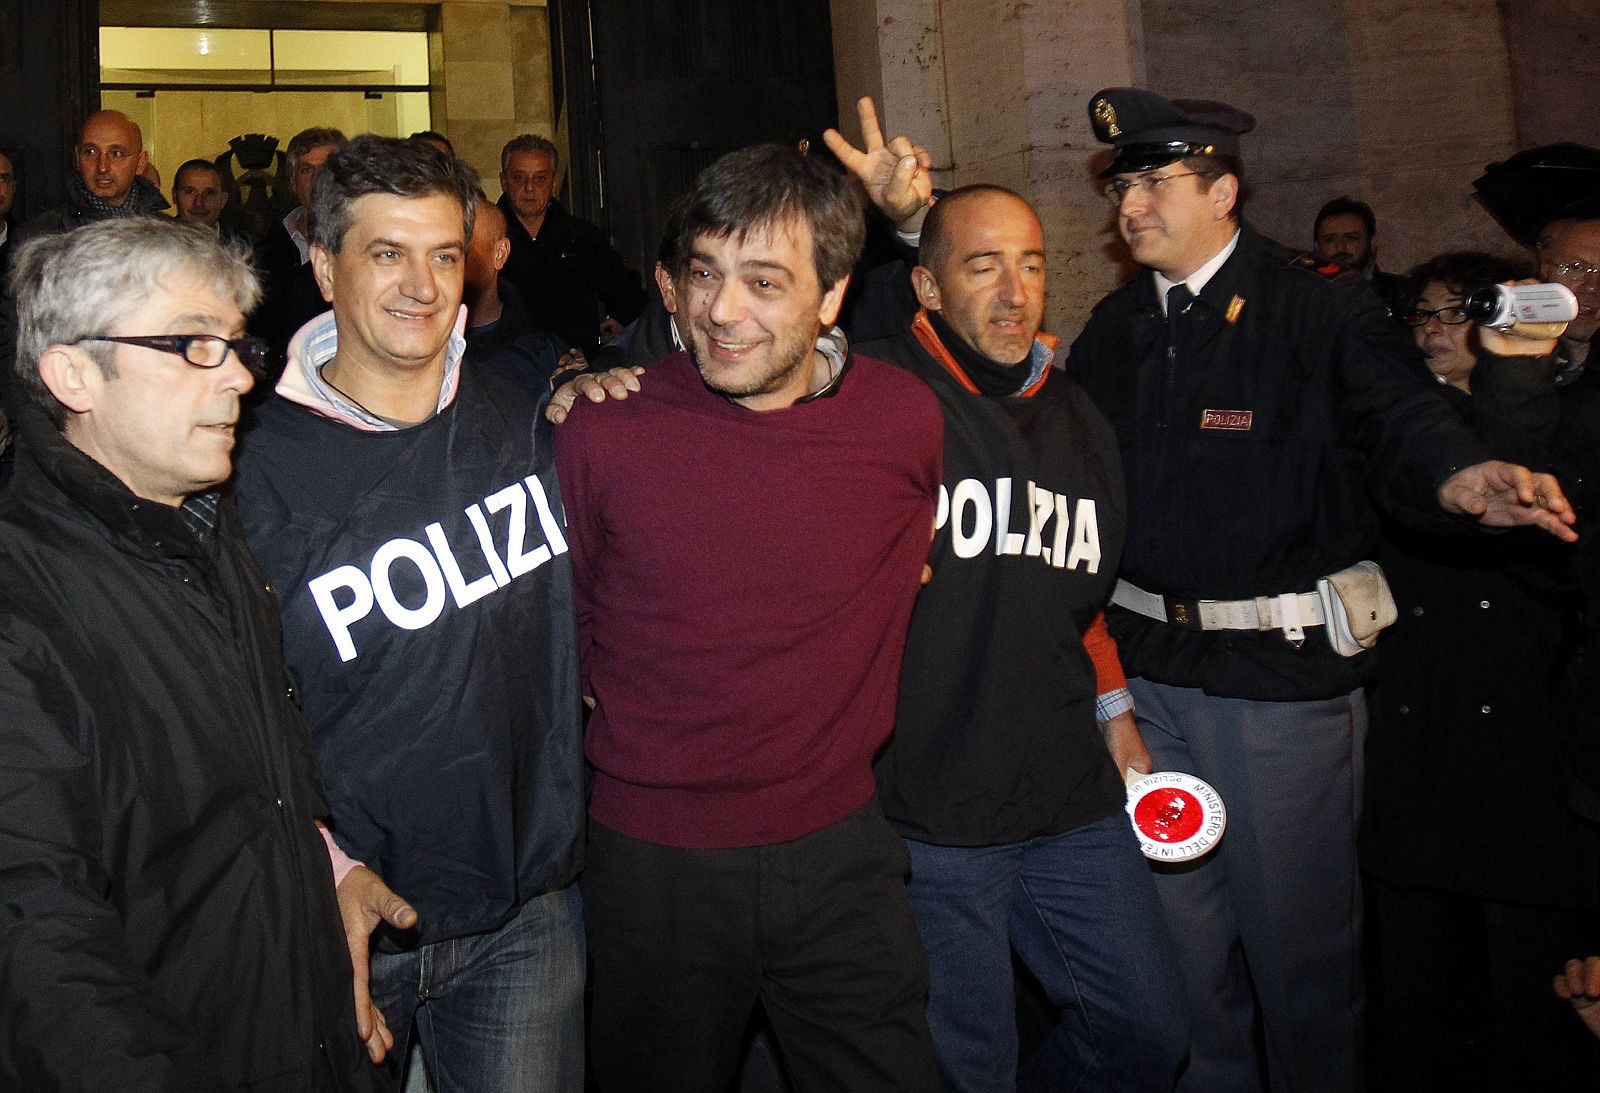 La policía italiana escolta al jefe camorrista Antonio Iovine tras ser detenido en Nápoles.